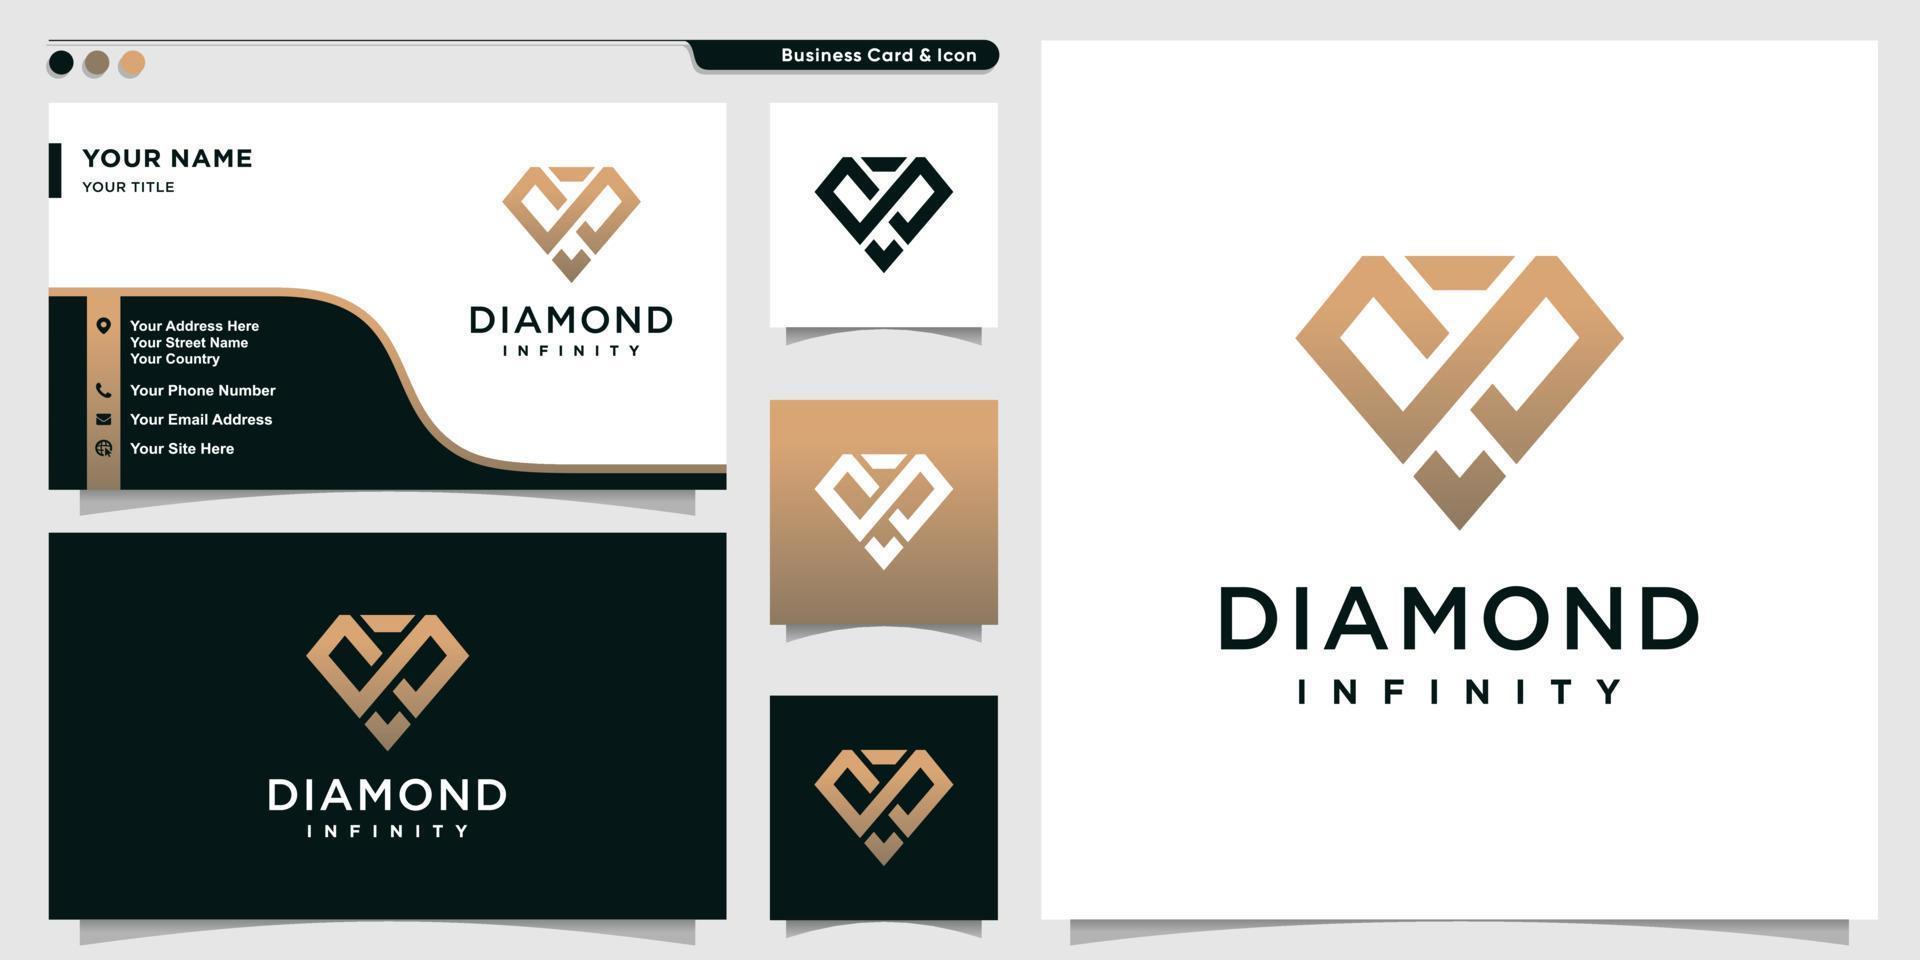 Diamant-Logo mit Unendlichkeitskonzept-Umrissstil und Visitenkarten-Design-Vorlage Premium-Vektor vektor